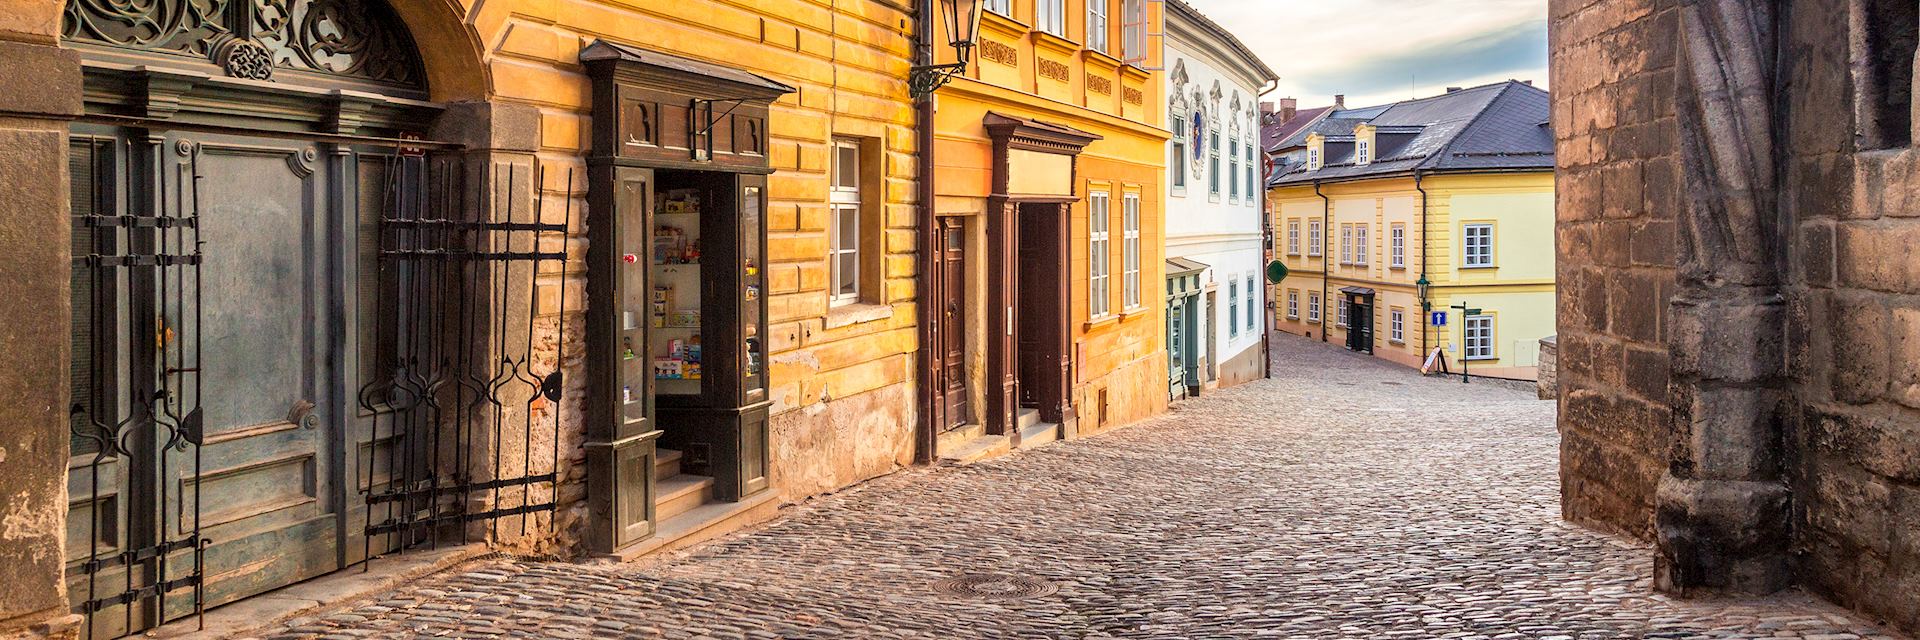 Medieval street in Kutná Hora